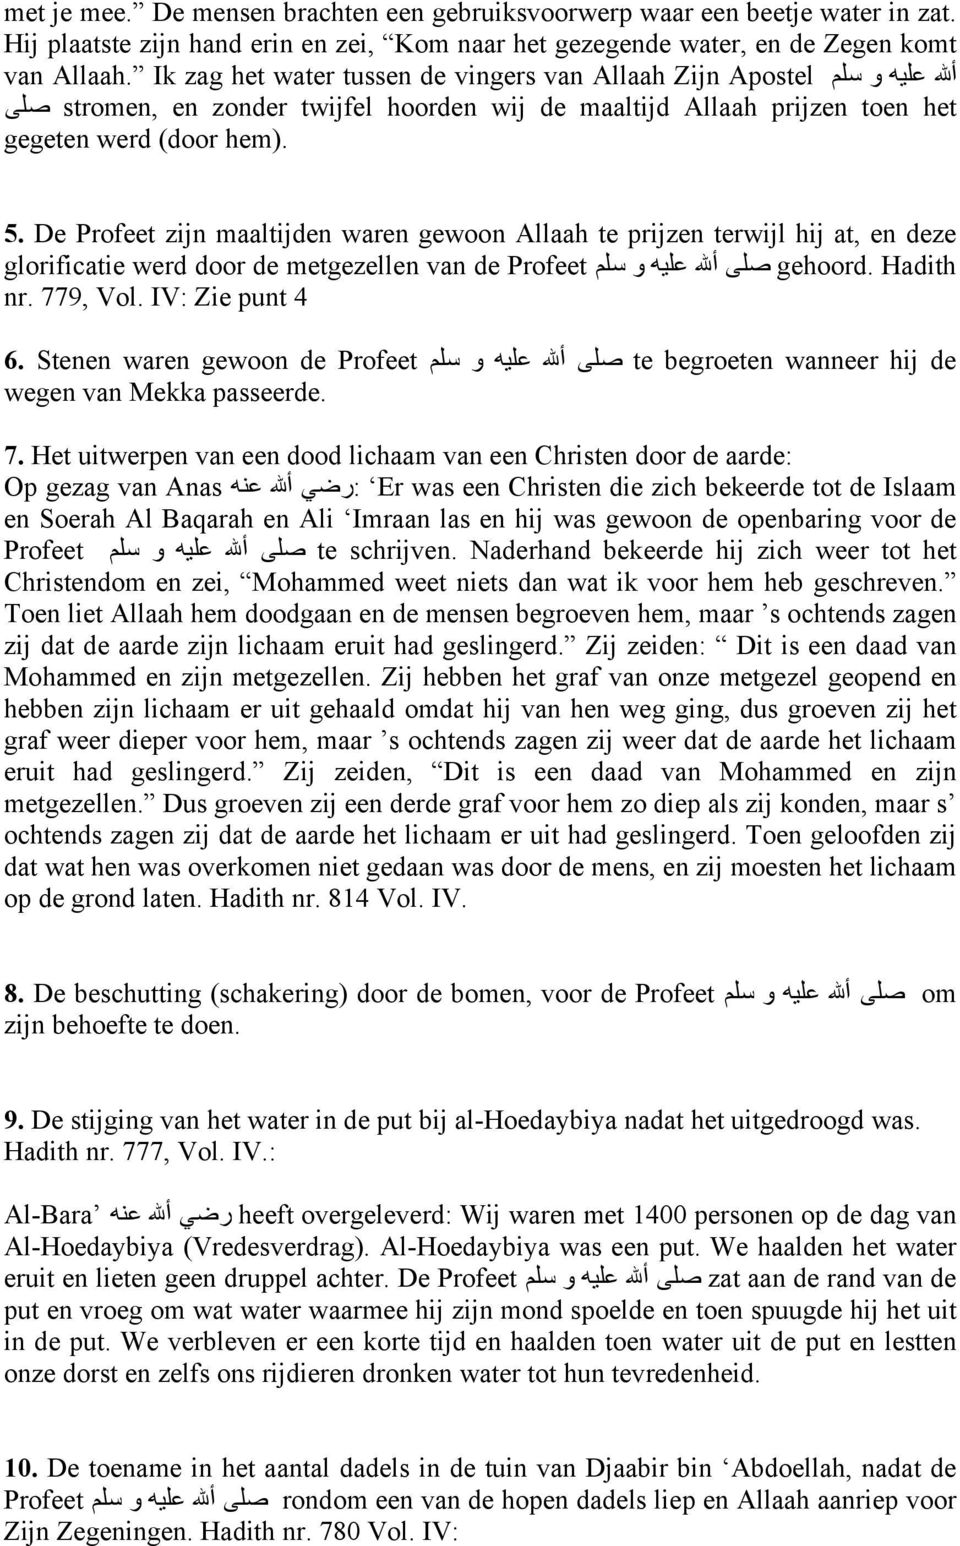 De Profeet zijn maaltijden waren gewoon Allaah te prijzen terwijl hij at, en deze glorificatie werd door de metgezellen van de Profeet صلى أالله عليه و سلم gehoord. Hadith nr. 779, Vol.